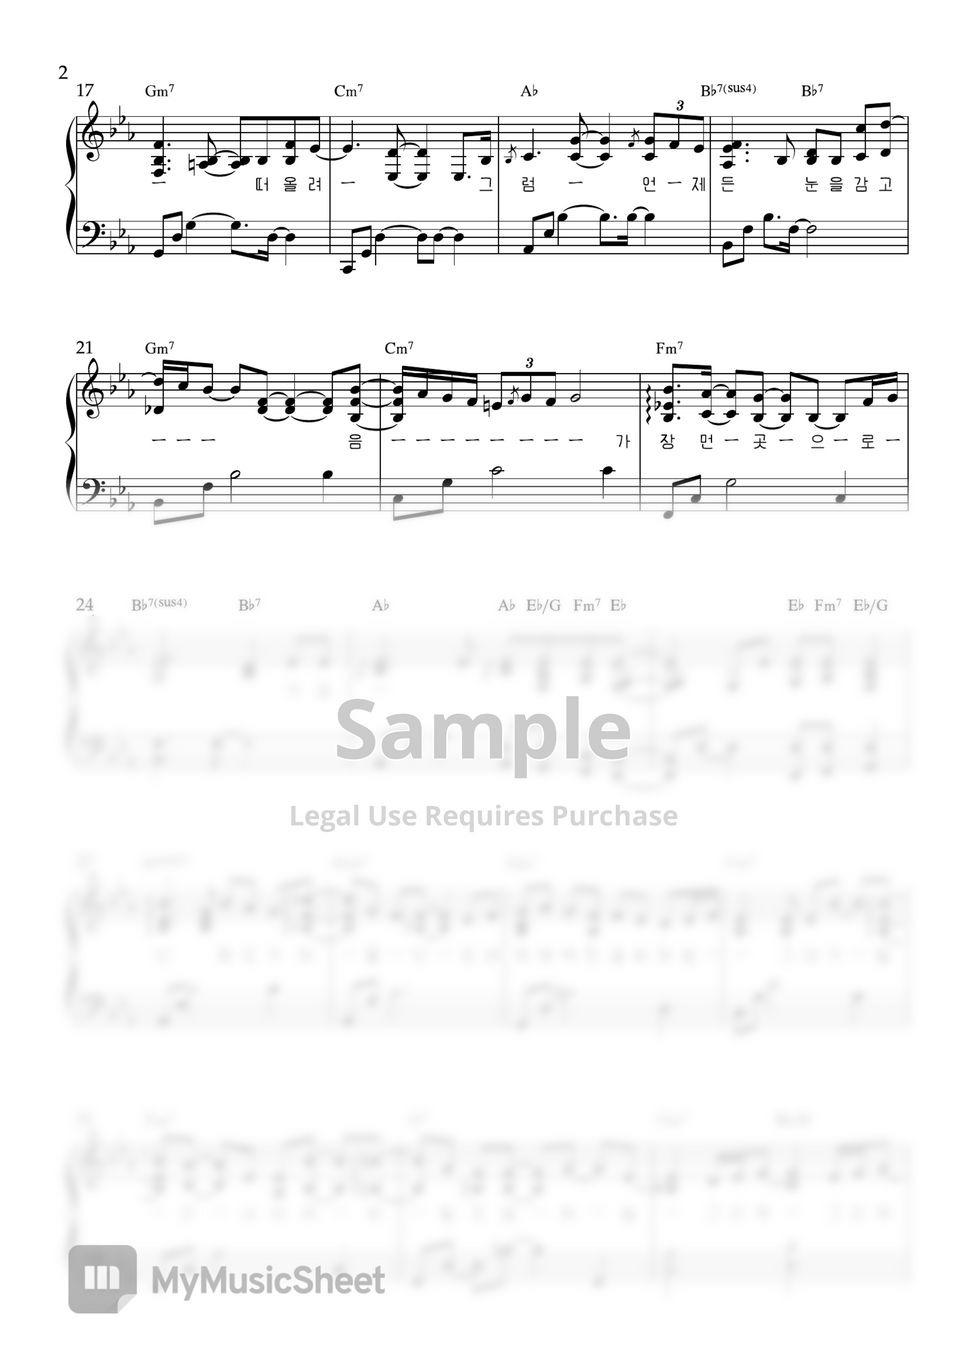 아이유 - 밤편지 (원키, 쉬운키(DM key)) by Song's piano